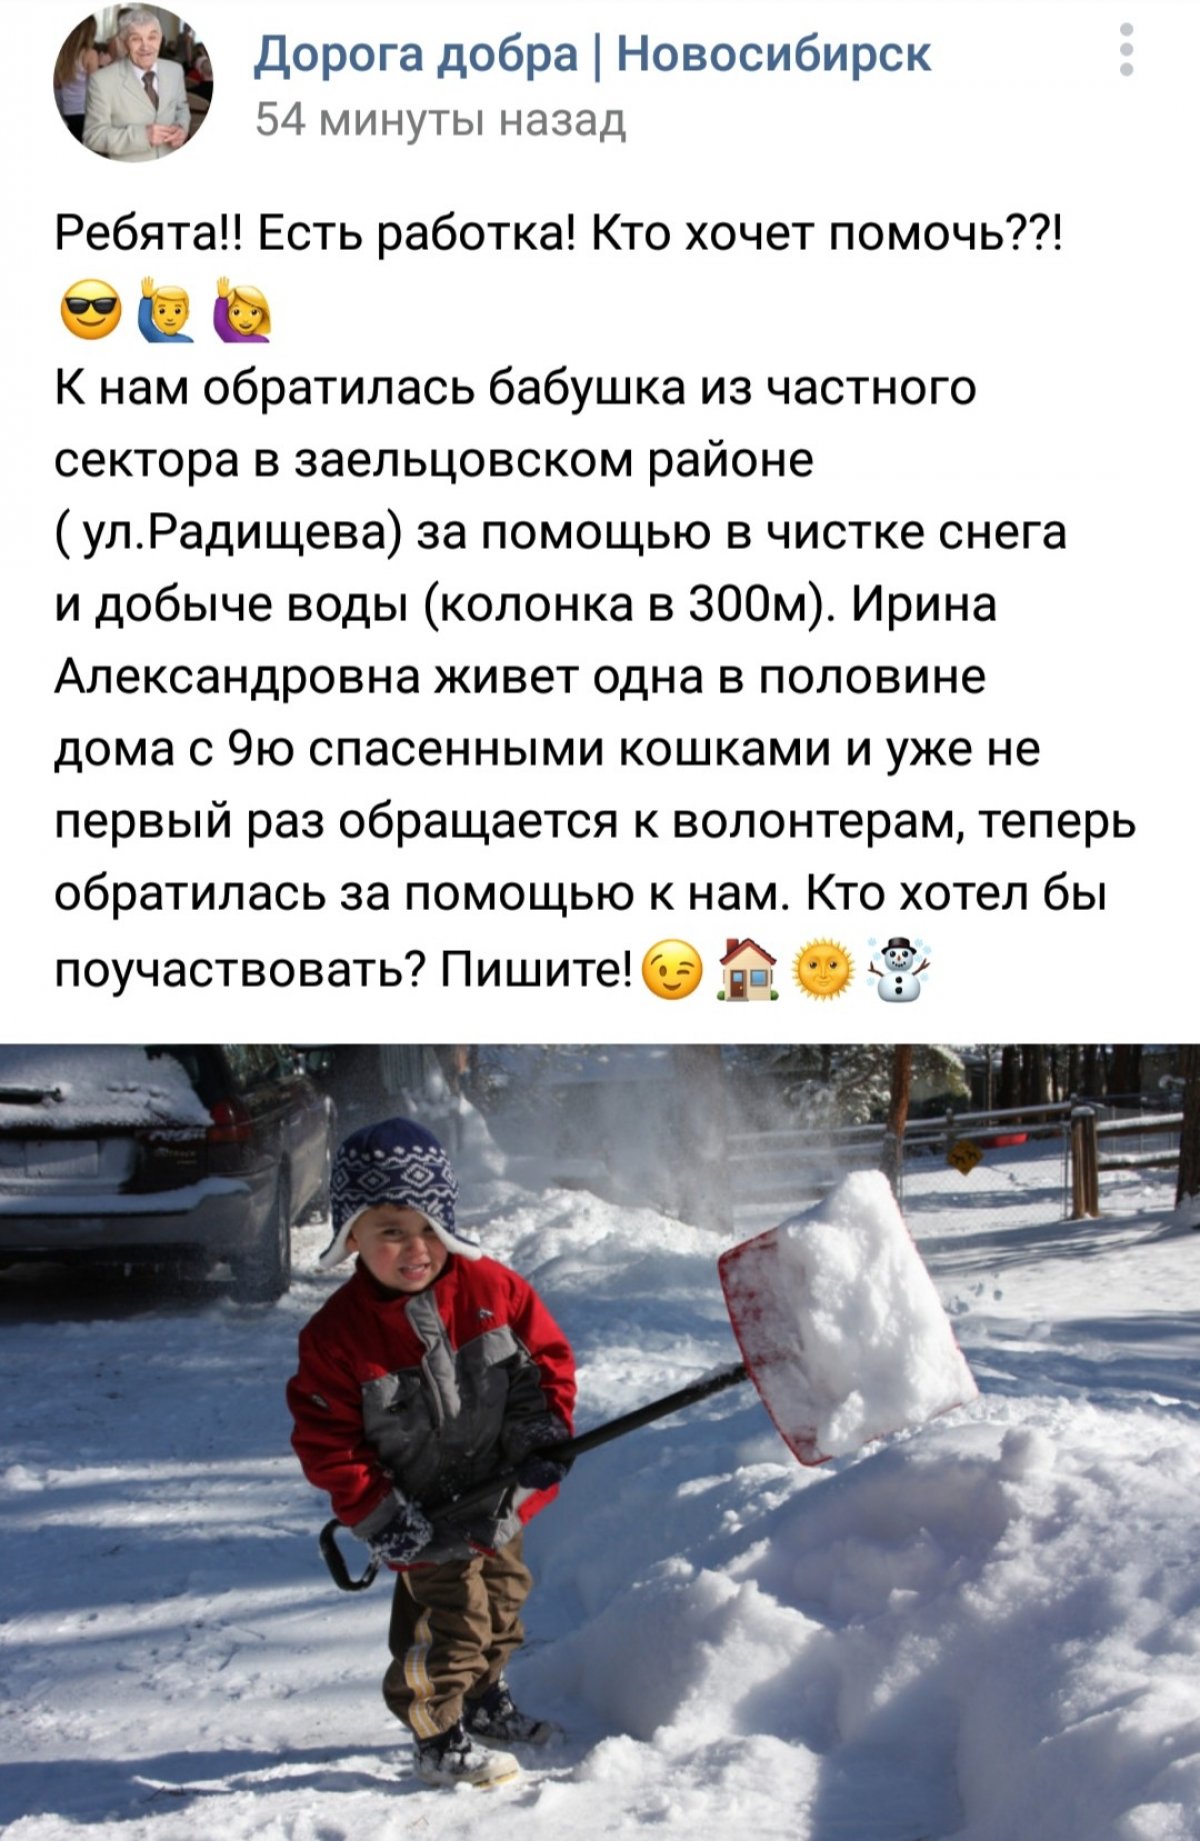 Желающие помочь молодые люди, вам сюда➡ Новосибирск . 😊